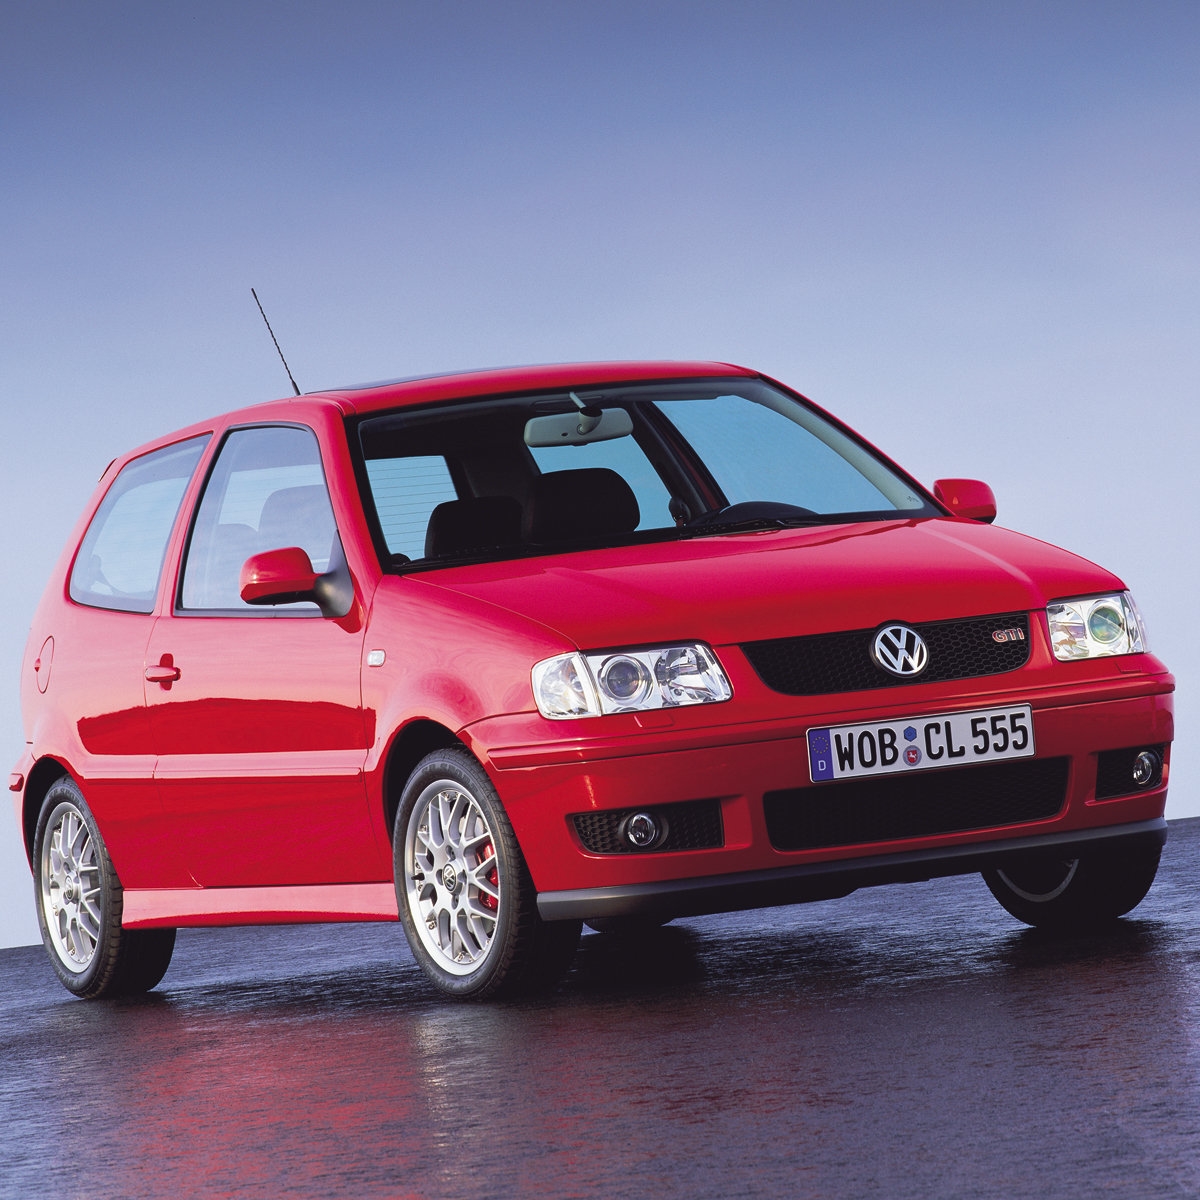 Découvrez, trouvez et achetez votre Volkswagen Polo 3 de 1994 à 2001.Ampoules LED intérieur et extérieur Volkswagen - Feux de position/Éclairage intérieur/Led plaque d’immatriculation/ feux de recul / Feux antibrouillard avant et arrière/feux de stop/feux de clignotant/feux de croisement/feux de route. Toutes Volkswagen Polo 3 de 1994 à 2001.2